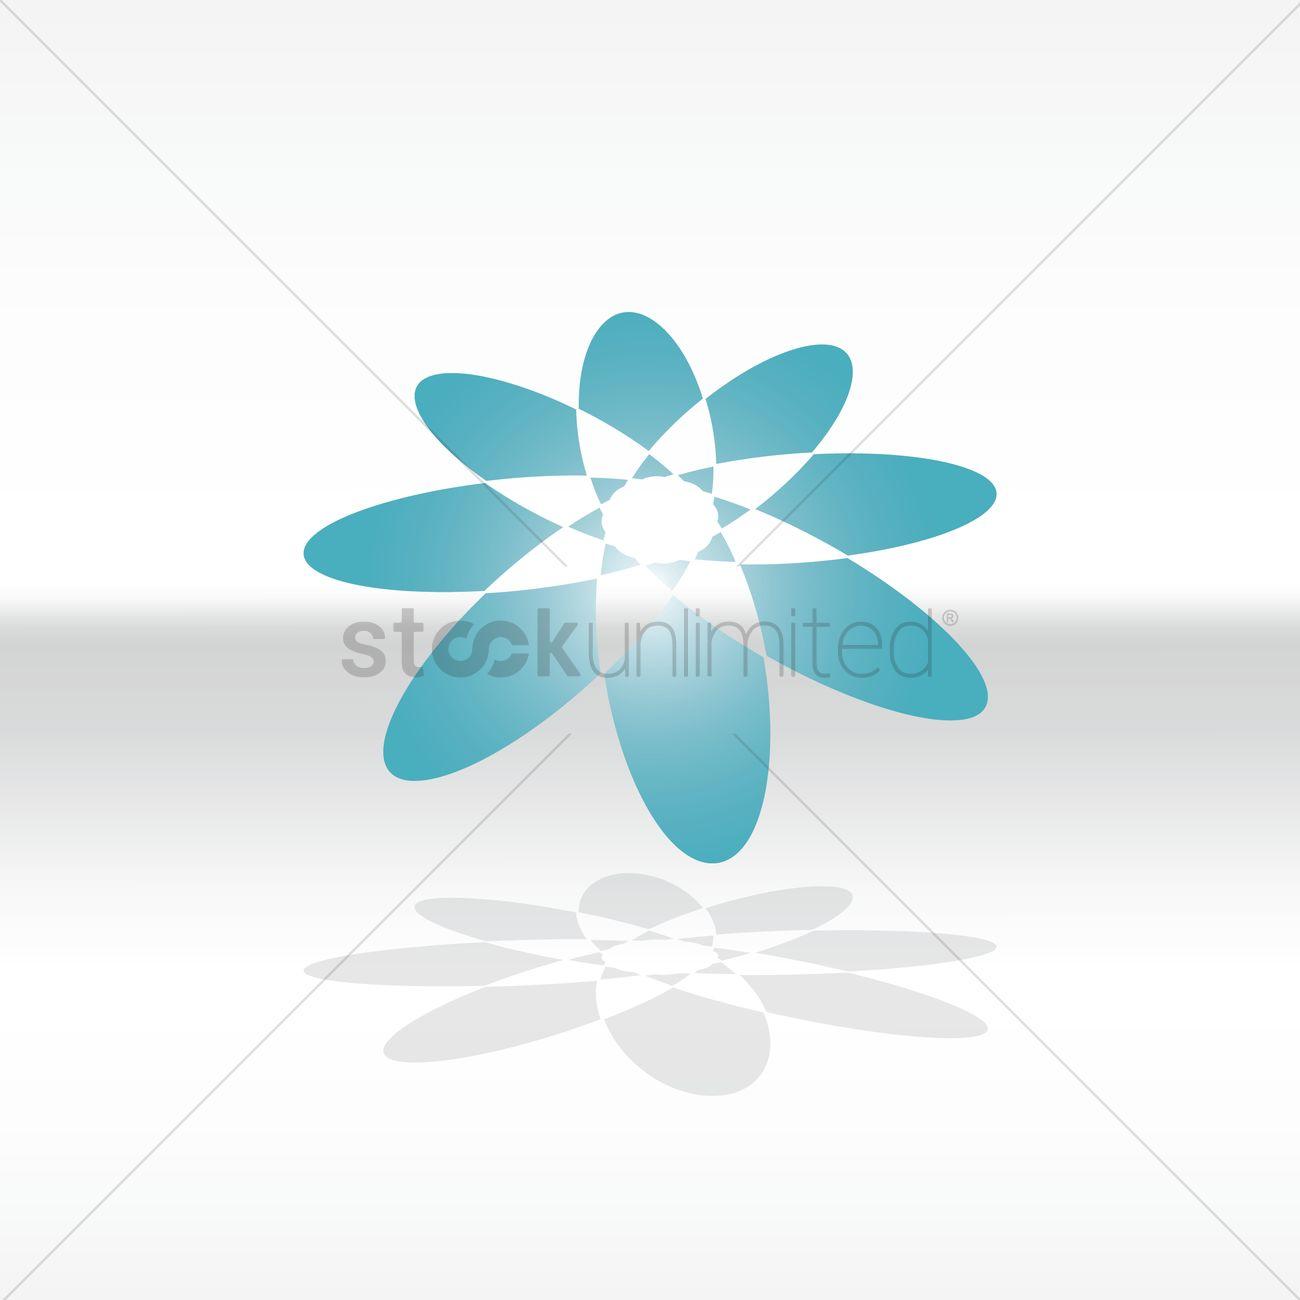 Christian Flower Logo - Flower logo element Vector Image - 1627973 | StockUnlimited